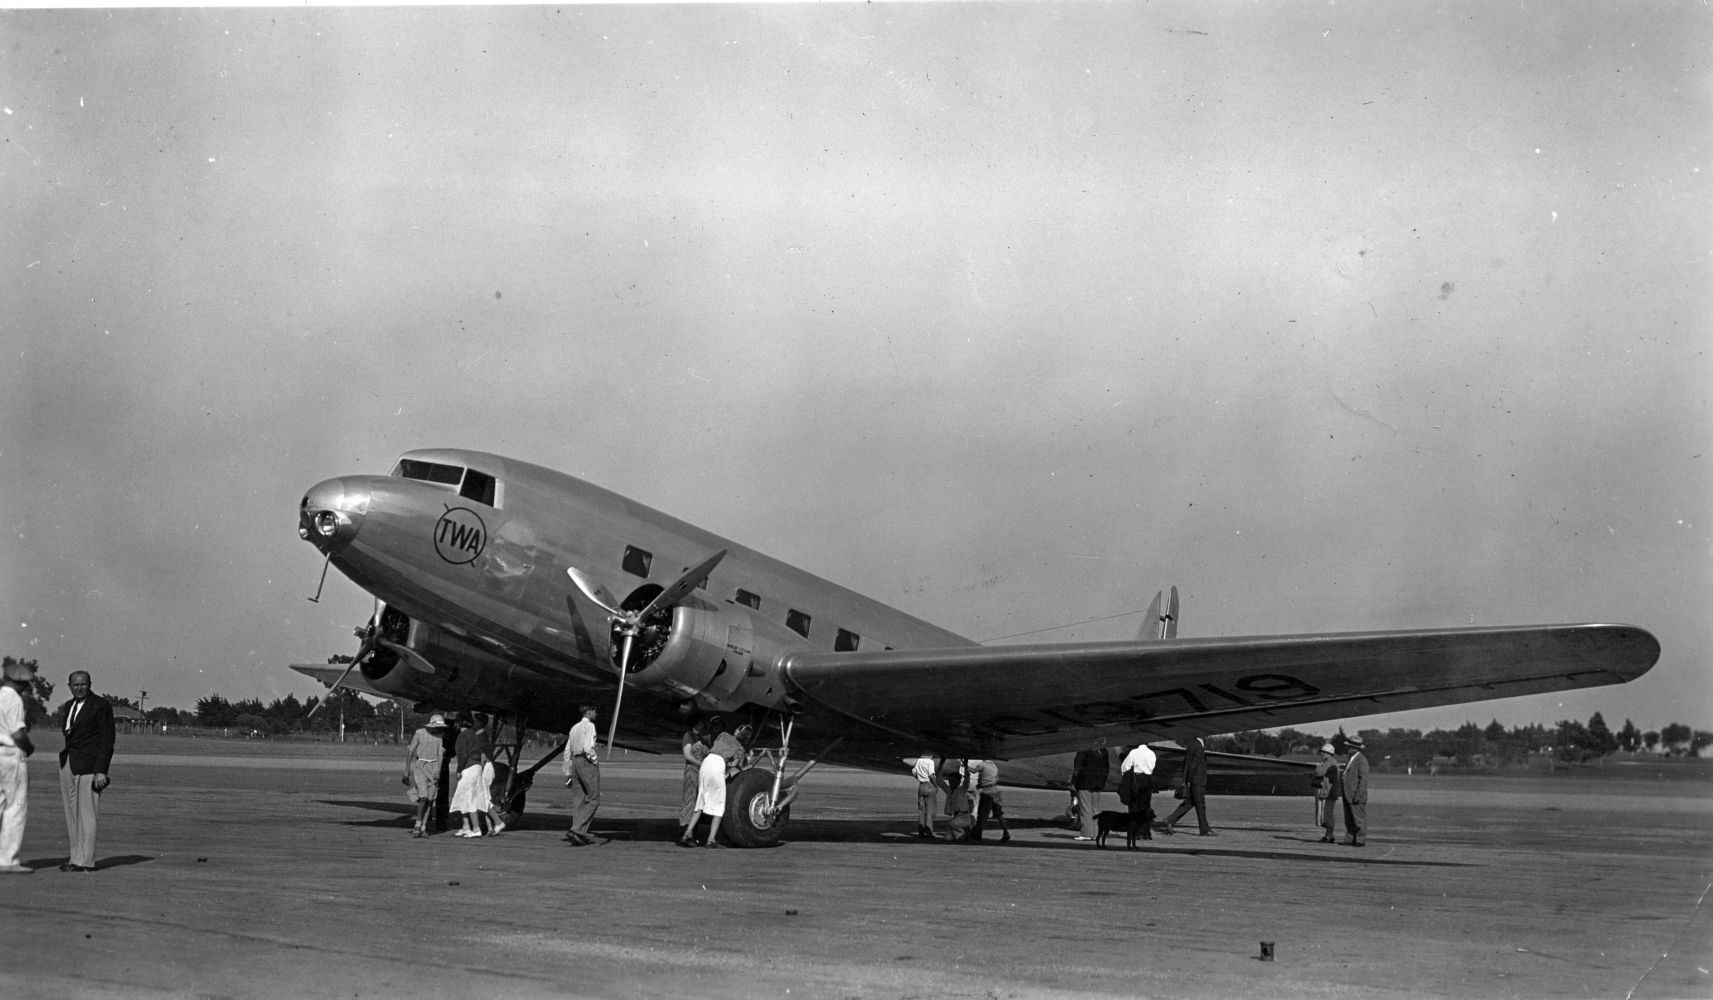 A TWA Douglas DC-2